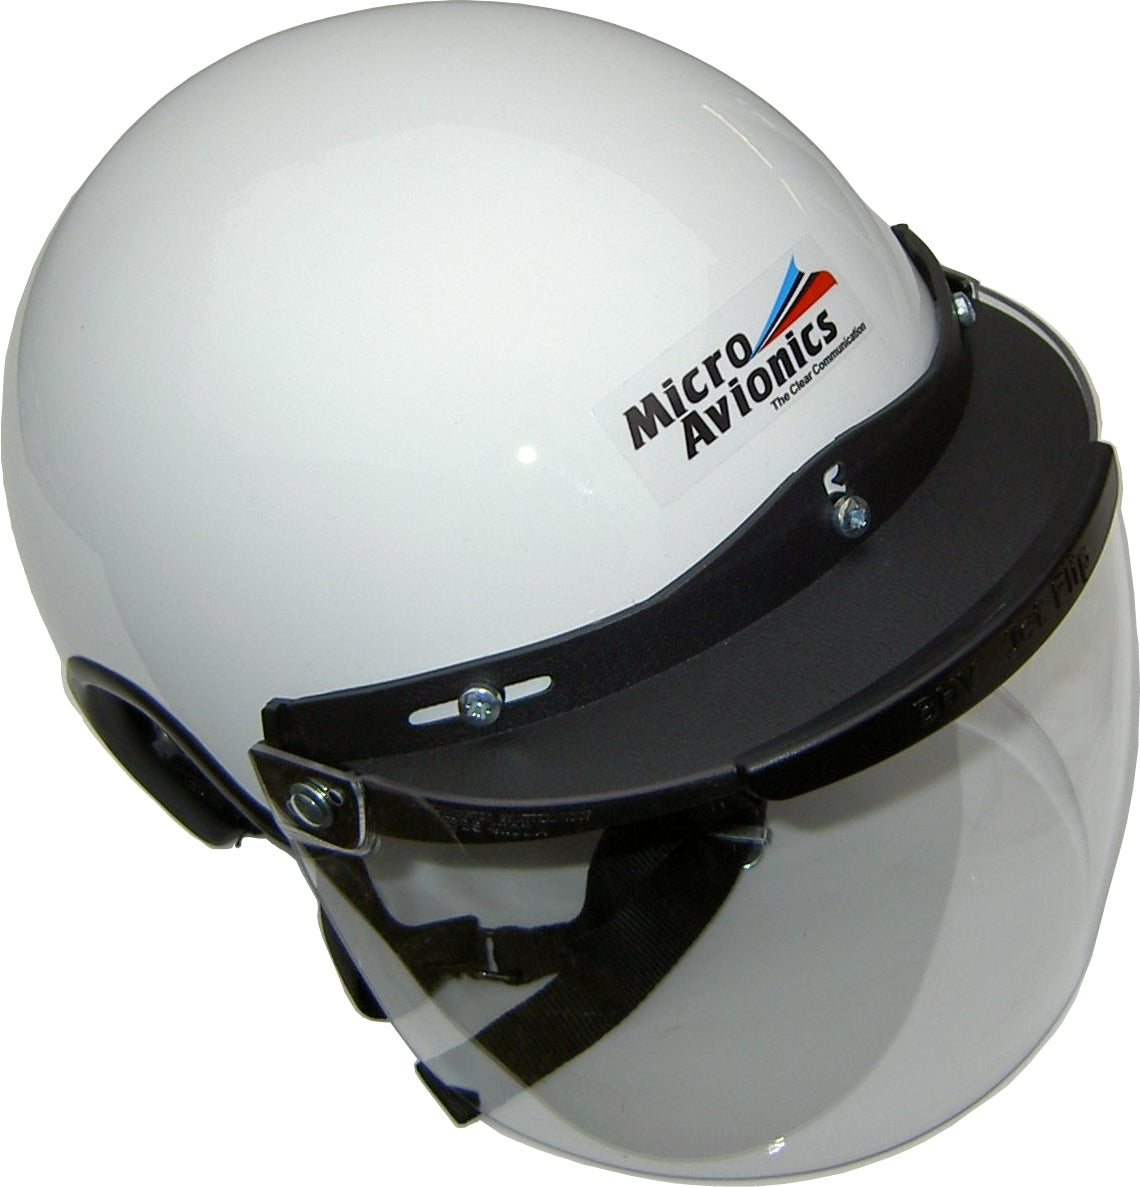 Helmet, Visor and Visor Lock